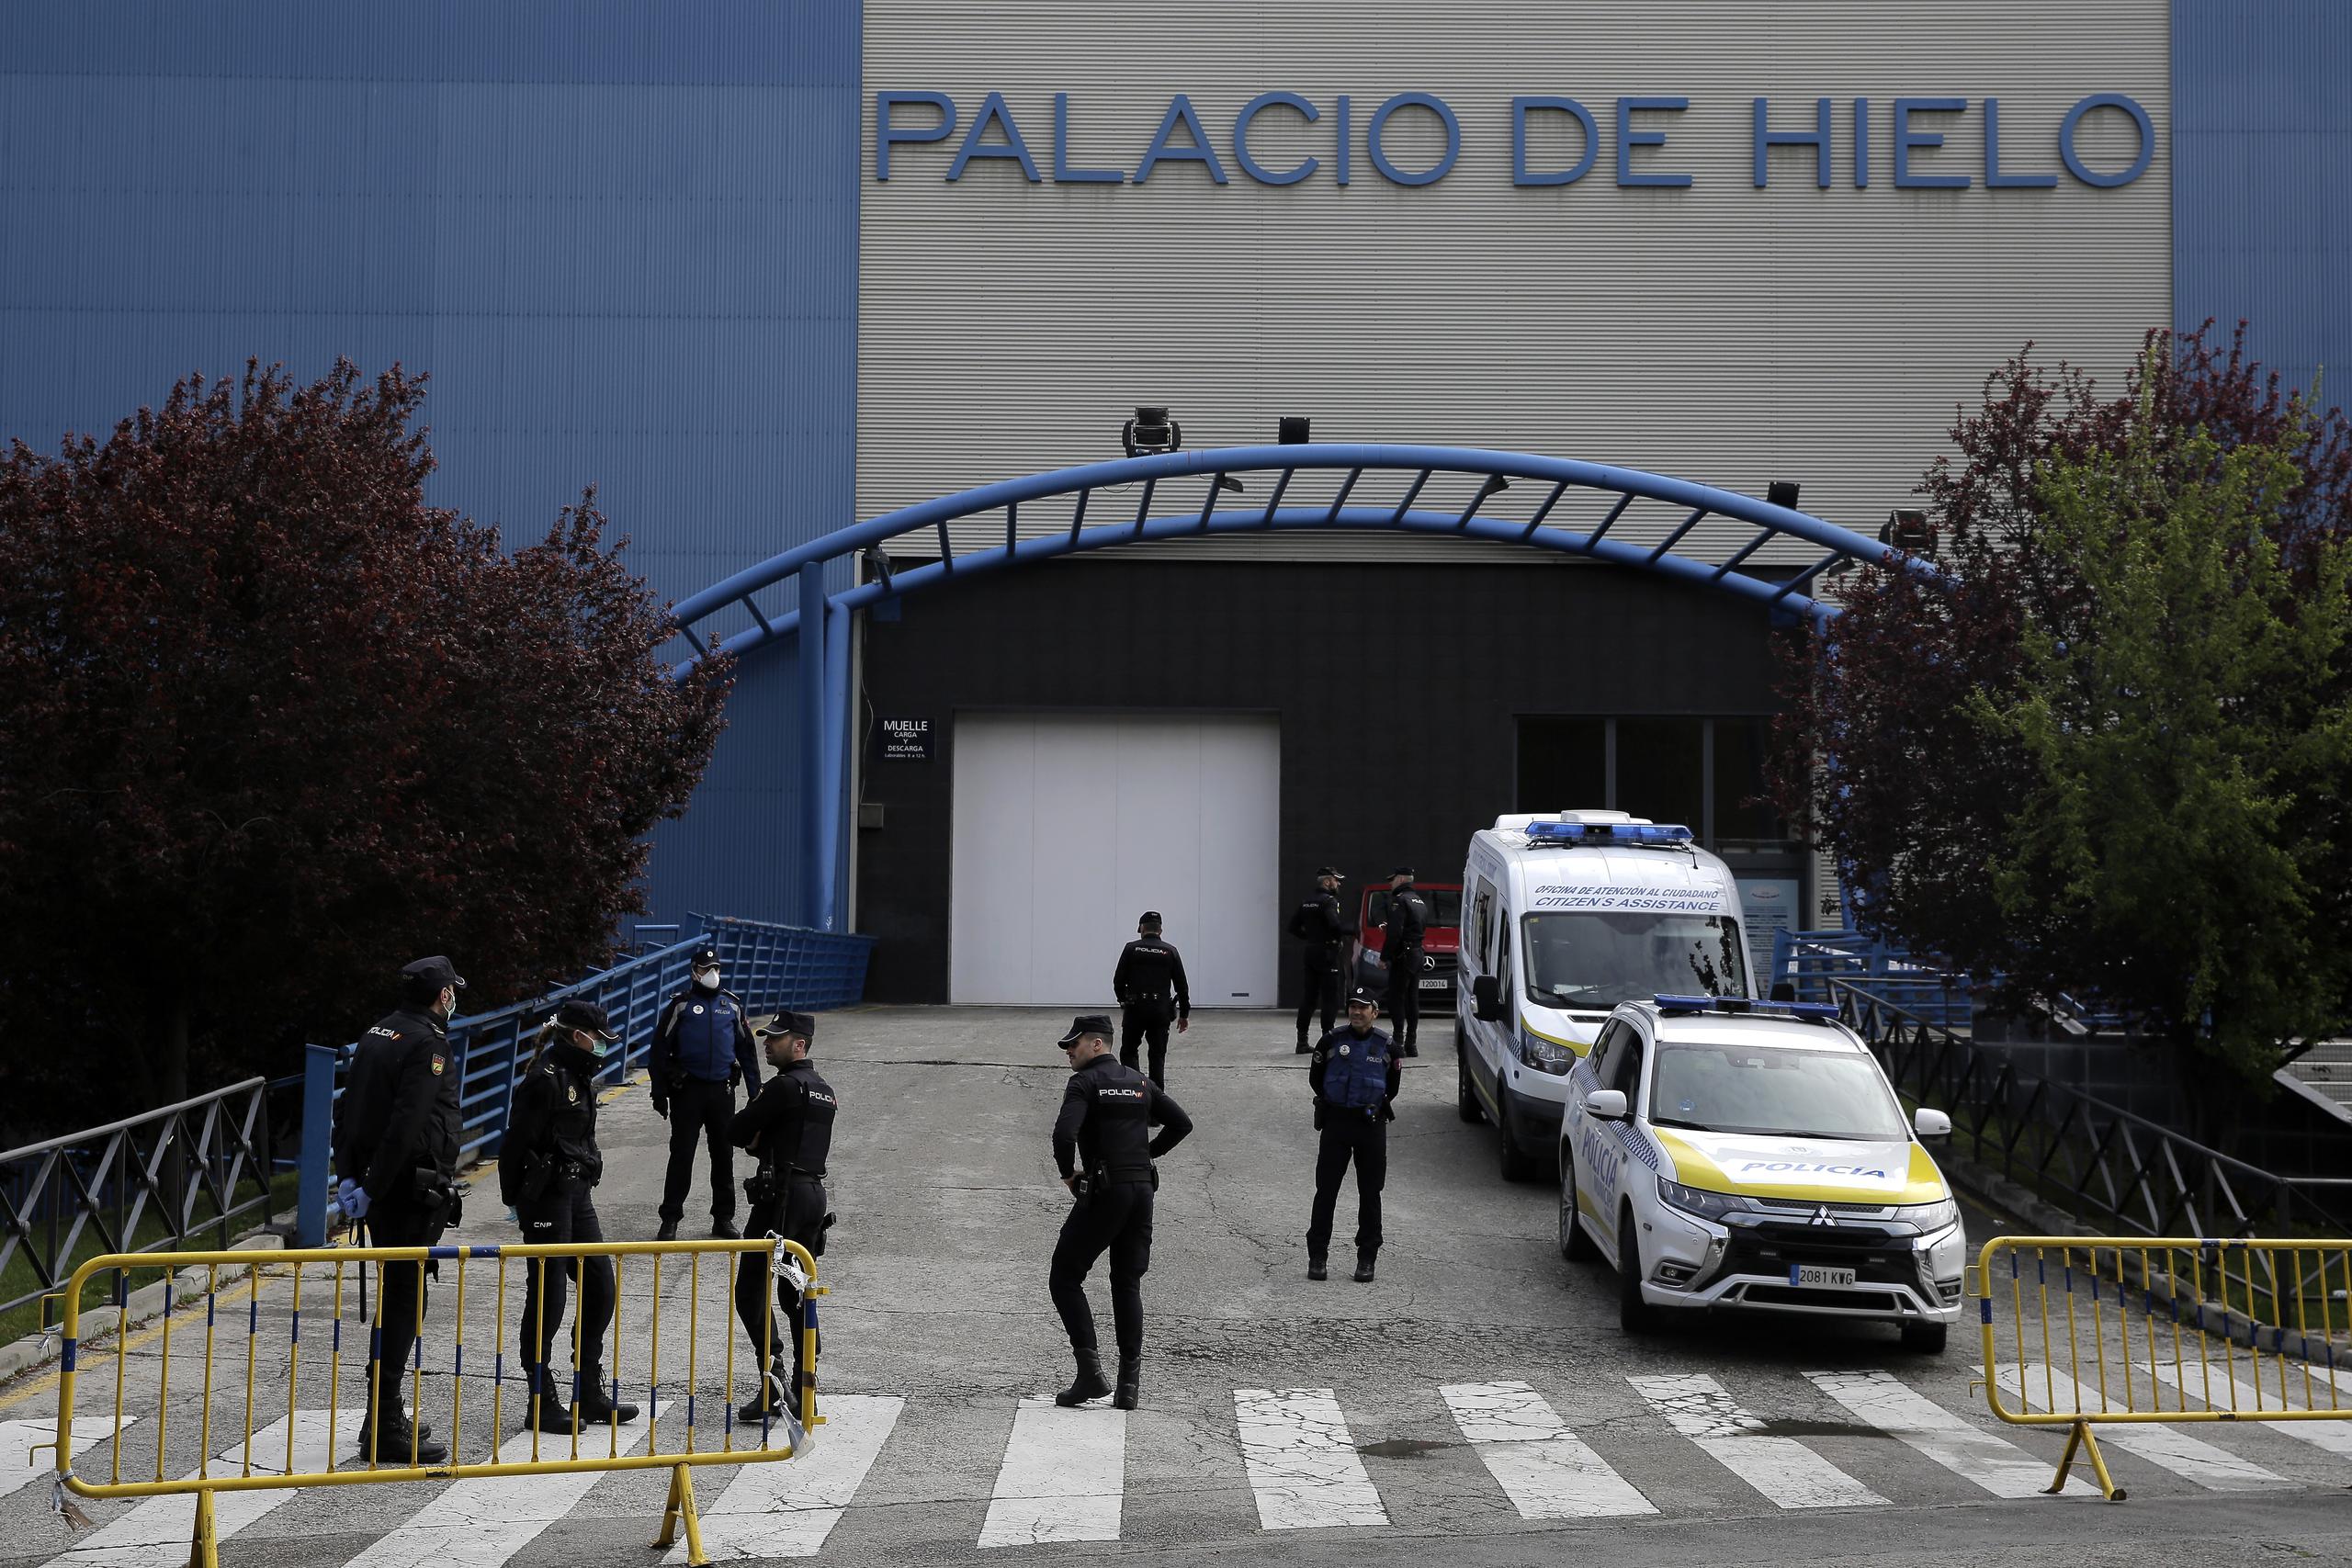 Madrid tomó el control de una pista de patinaje en hielo luego que la morgue municipal quedó abrumada. Hasta la fecha 1,535 personas han muerto en Madrid, más de la mitad del total nacional. La región tiene más de 12,350 infecciones.